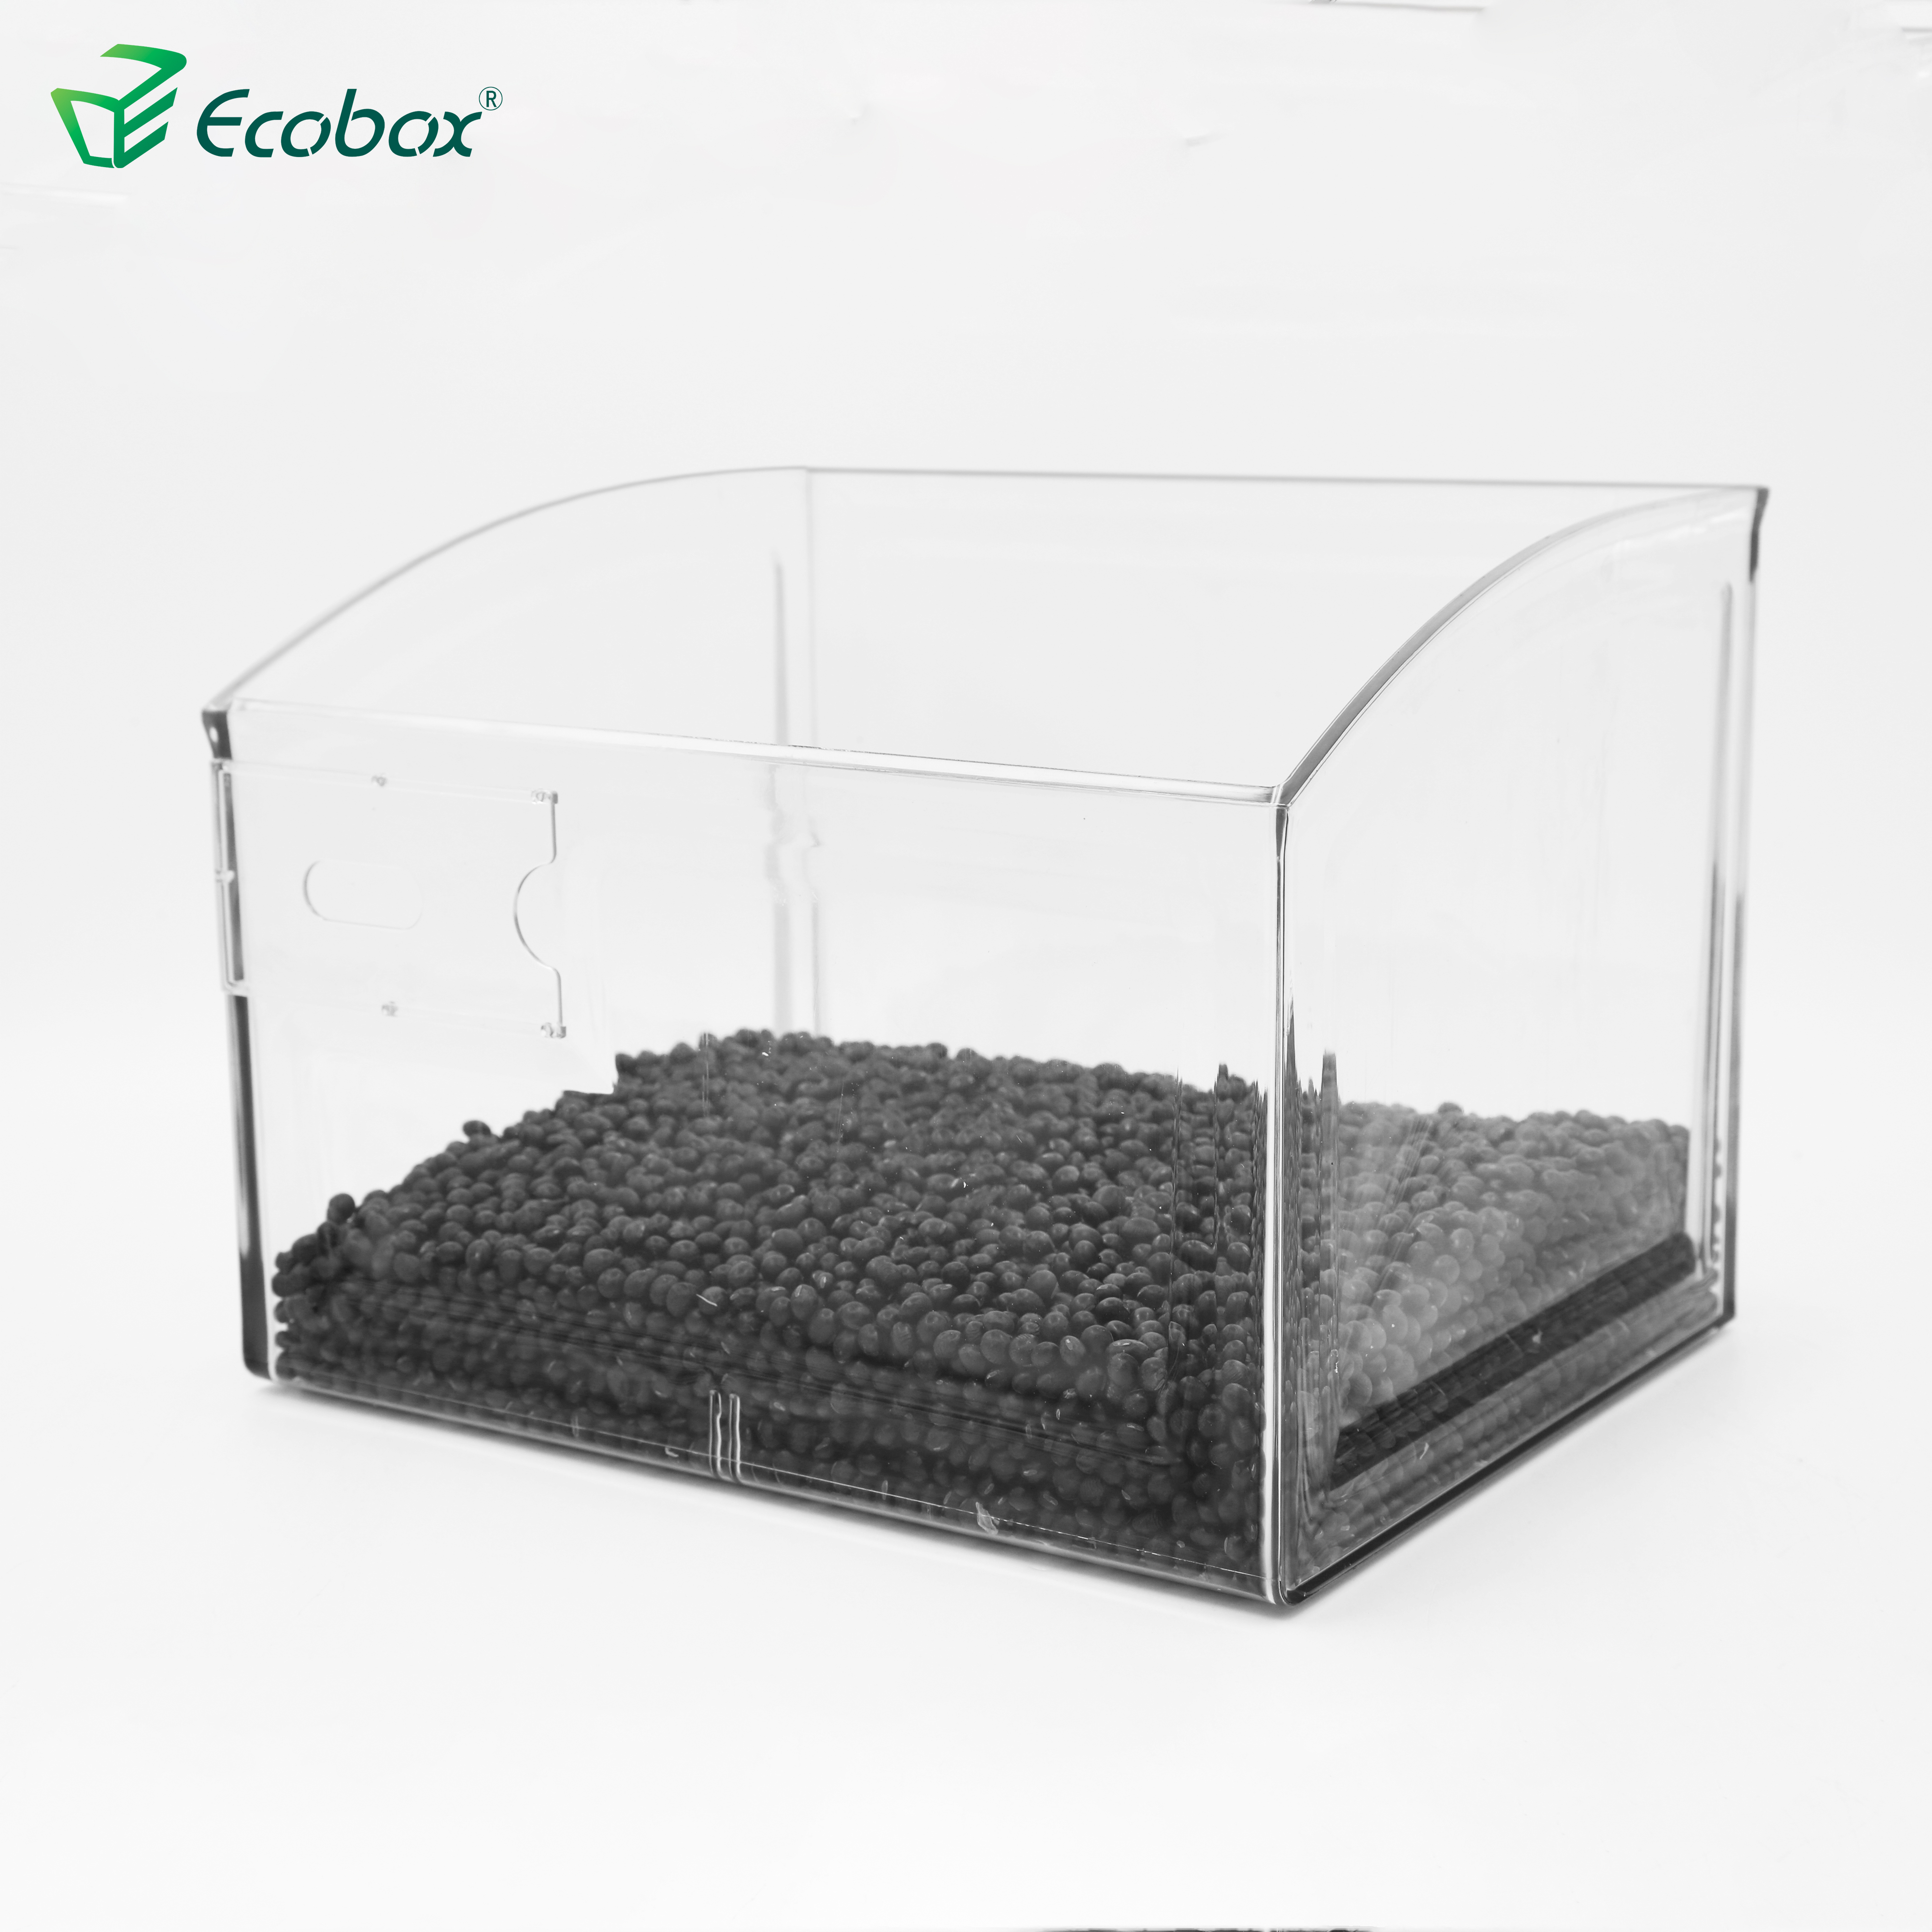 Ecobox Ecofriendly SPH-008 Supermarkt-Lebensmittelbehälter für die Lebensmittelindustrie